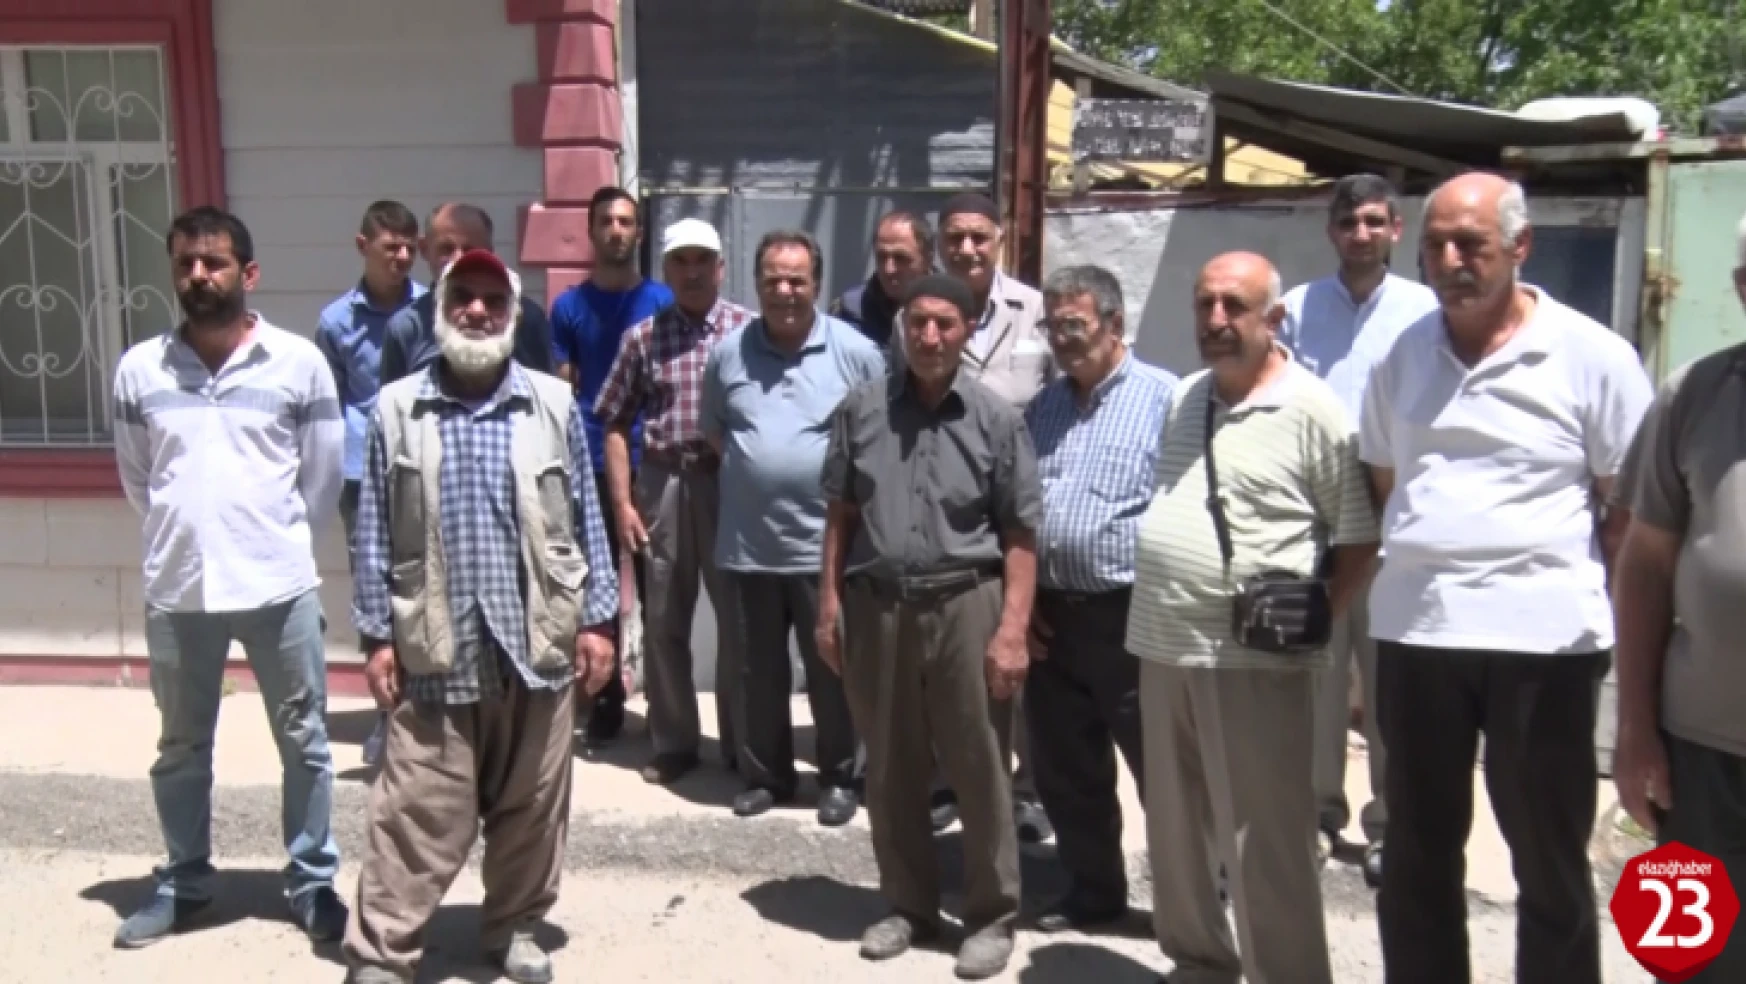 Aksaray Mahallesinde Yaşanan Hırsızlık Olayları Vatandaşları Bezdiriyor